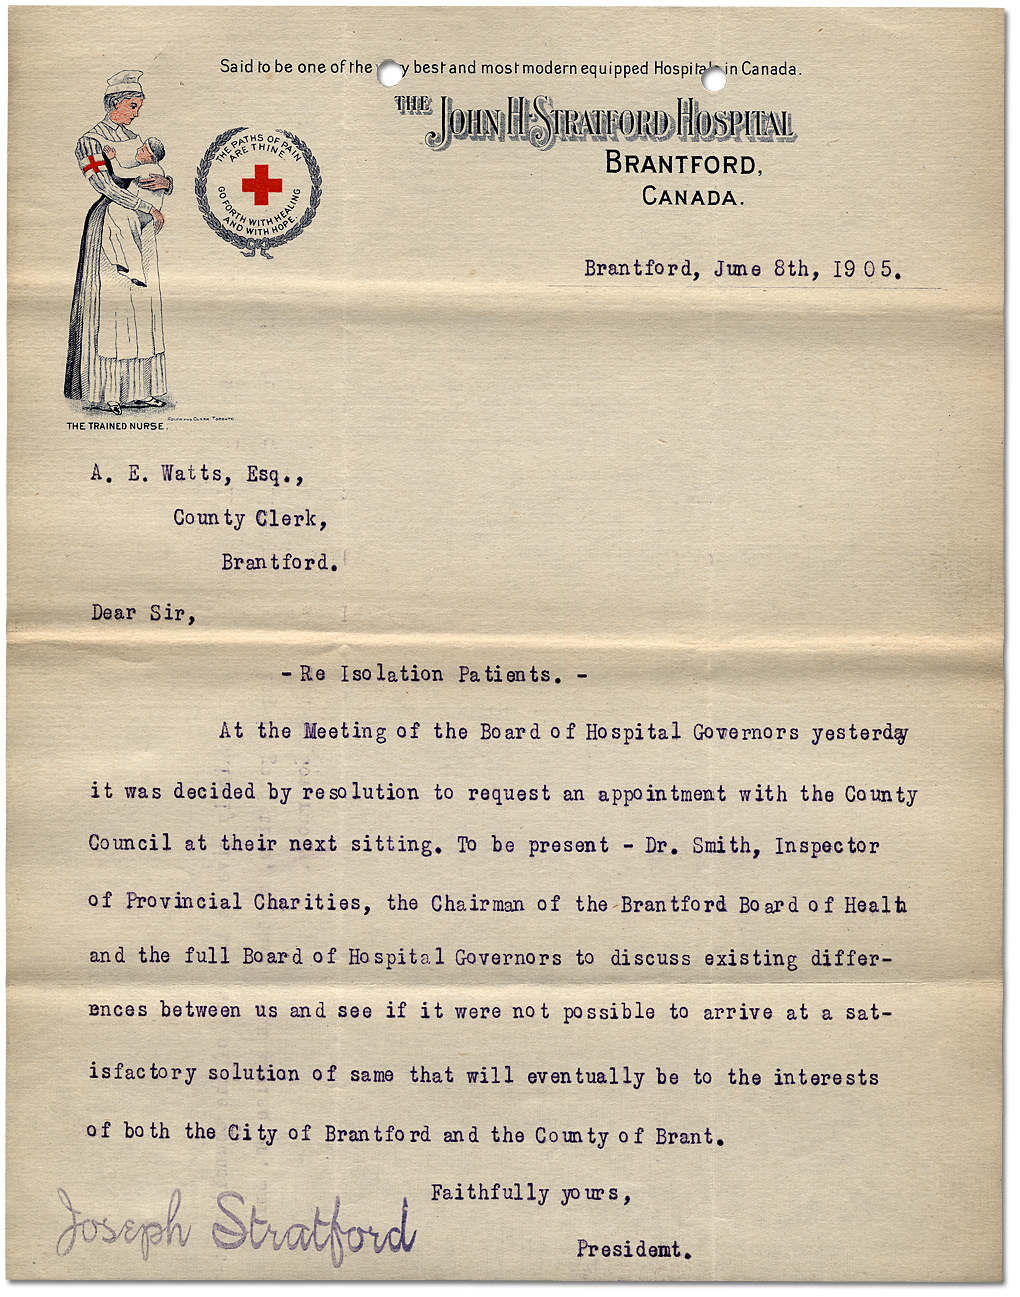 Lettre du président de l'hôpital John H. Stratford au greffier du comté